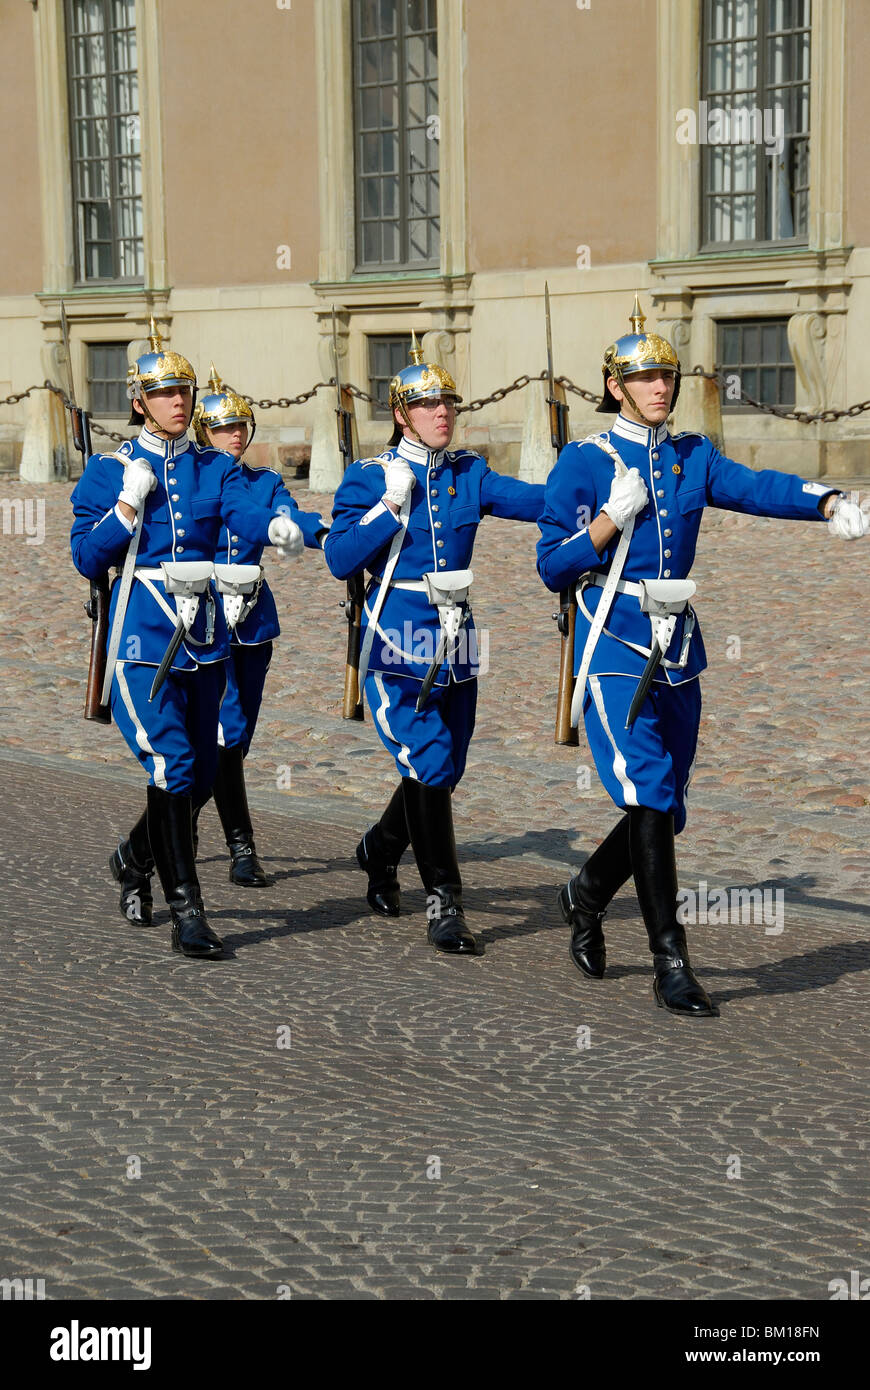 La garde à la Kungliga Slottet Stockholm Palace, résidence officielle du monarque suédois, Stockholm, Suède, Scandinavie Banque D'Images